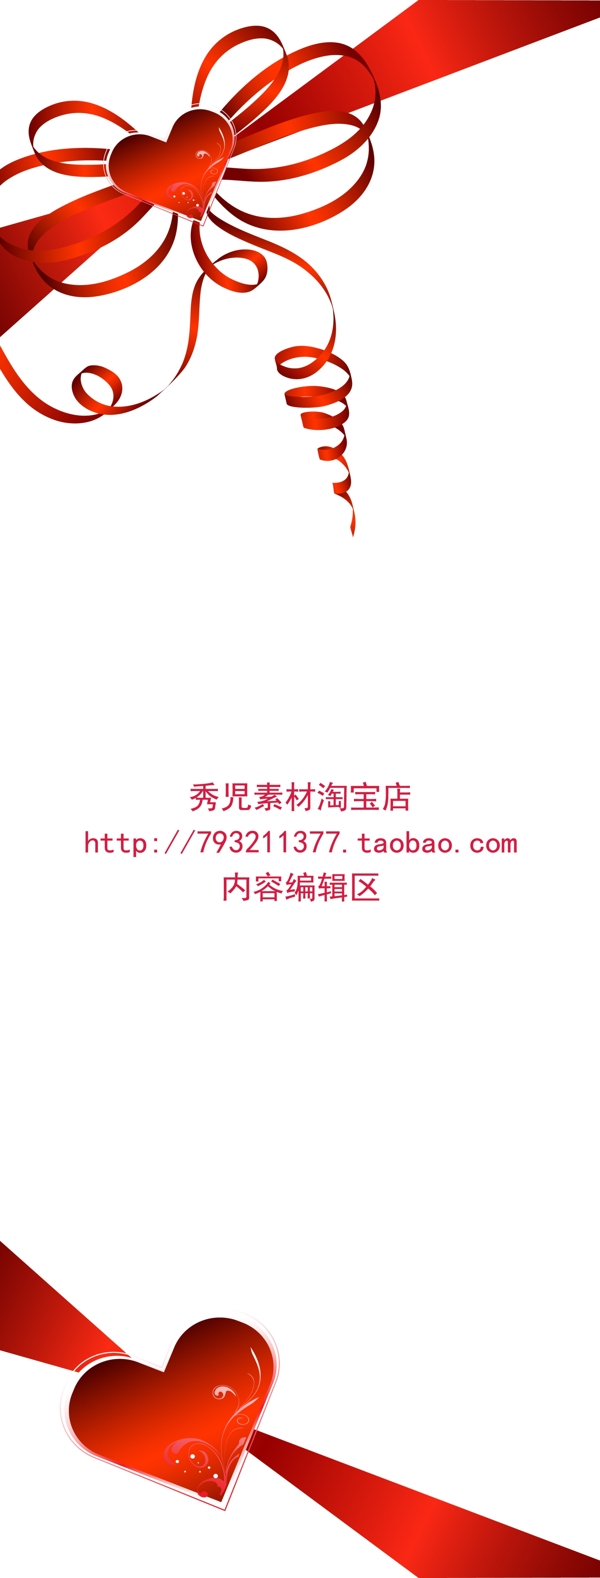 红色中国结展架设计素材海报画面